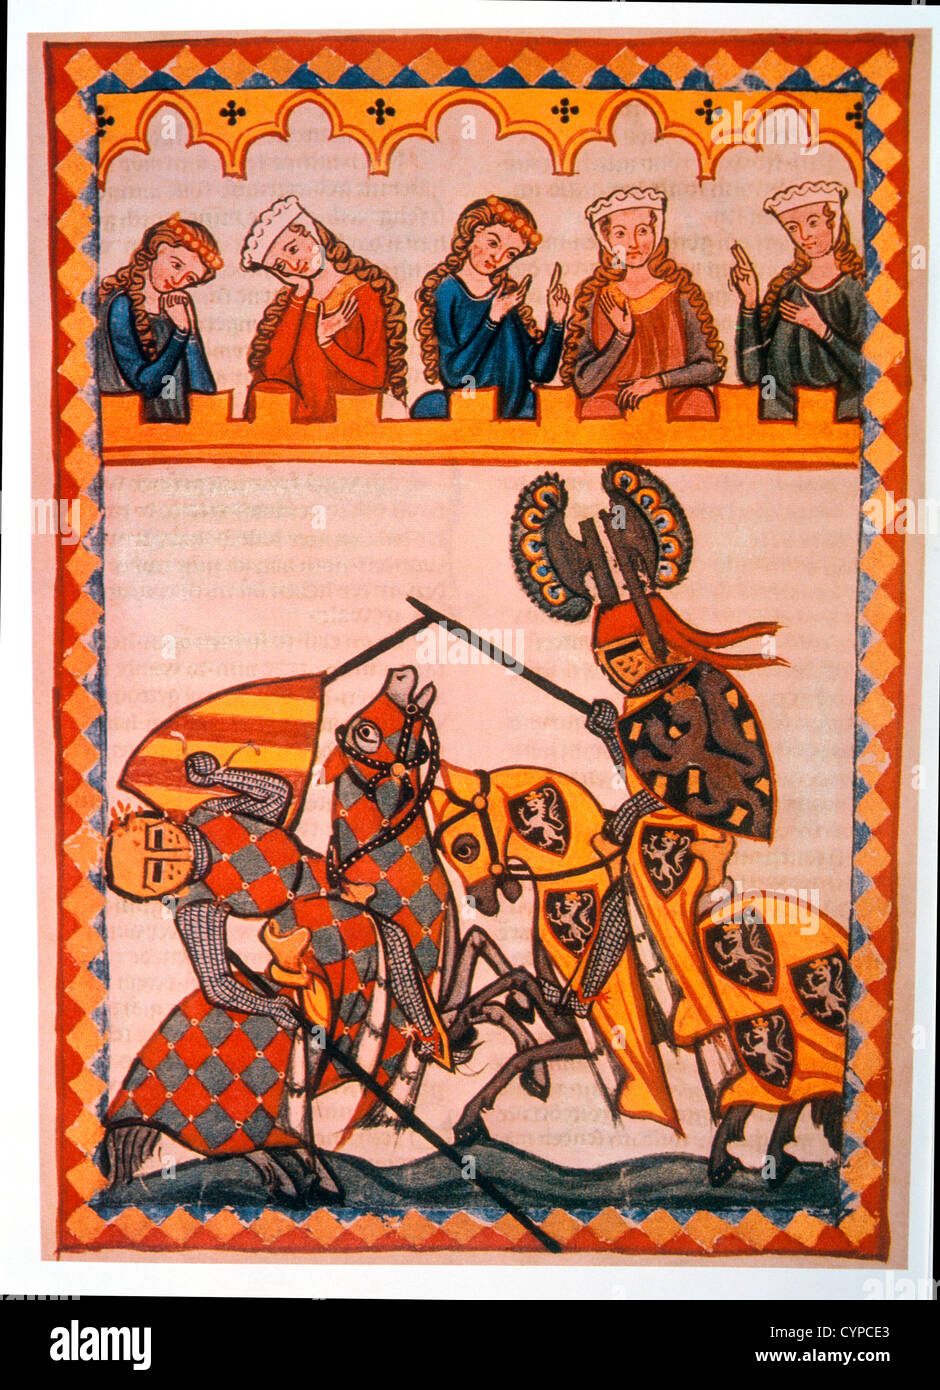 Walter von Klingen bat son adversaire dans un tournoi, illustration de livre de prières flamand, 14e siècle Banque D'Images